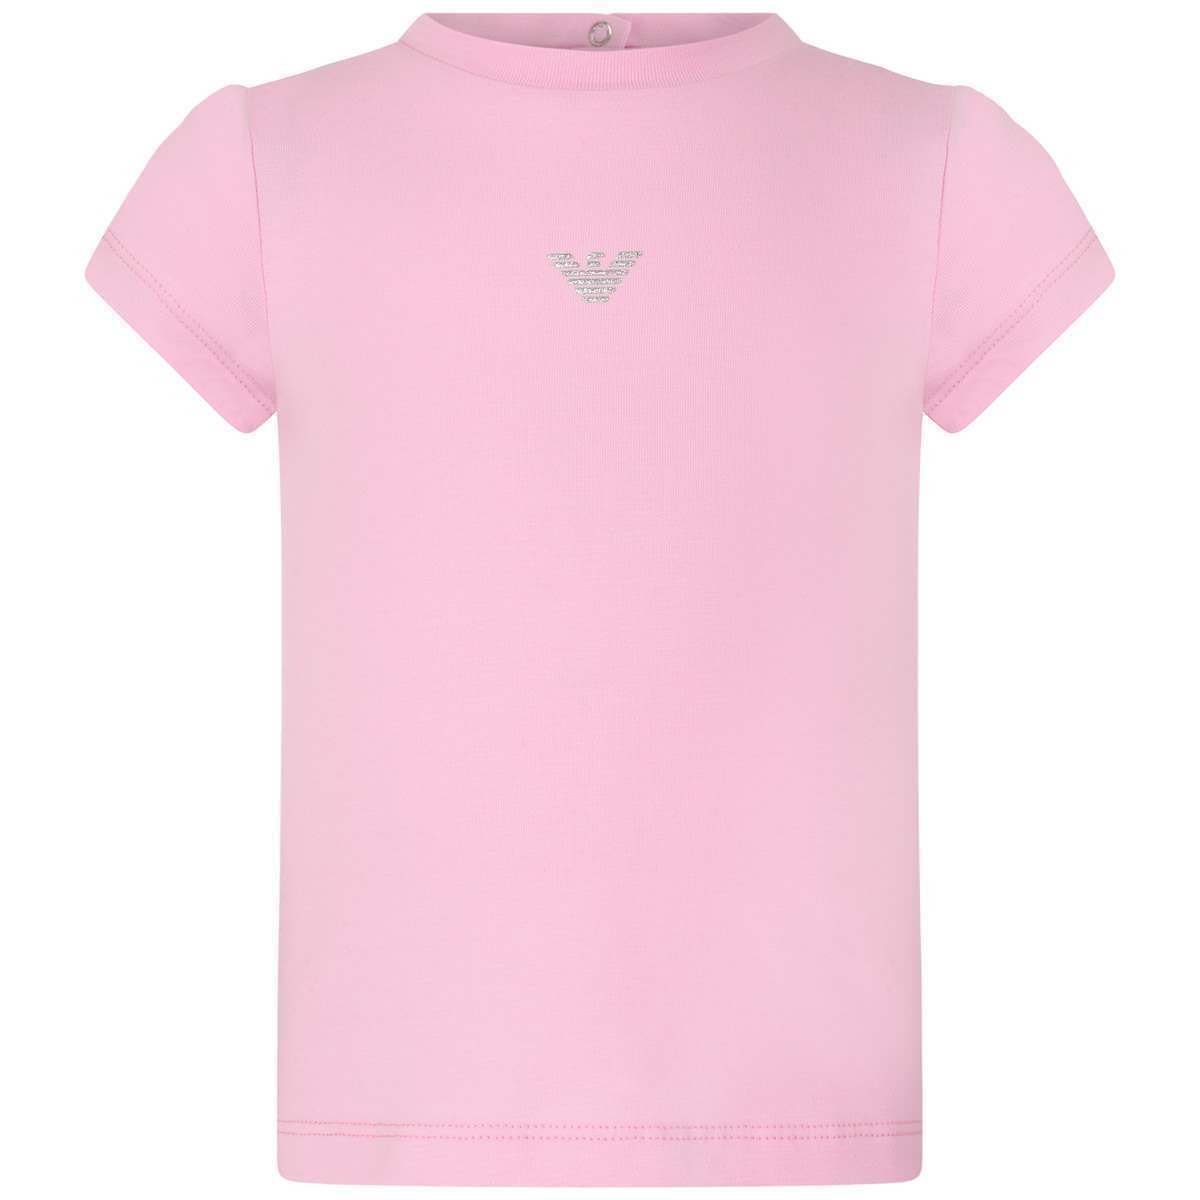 Pink Eagle Logo - Armani Baby Girls Pink Eagle Logo Top